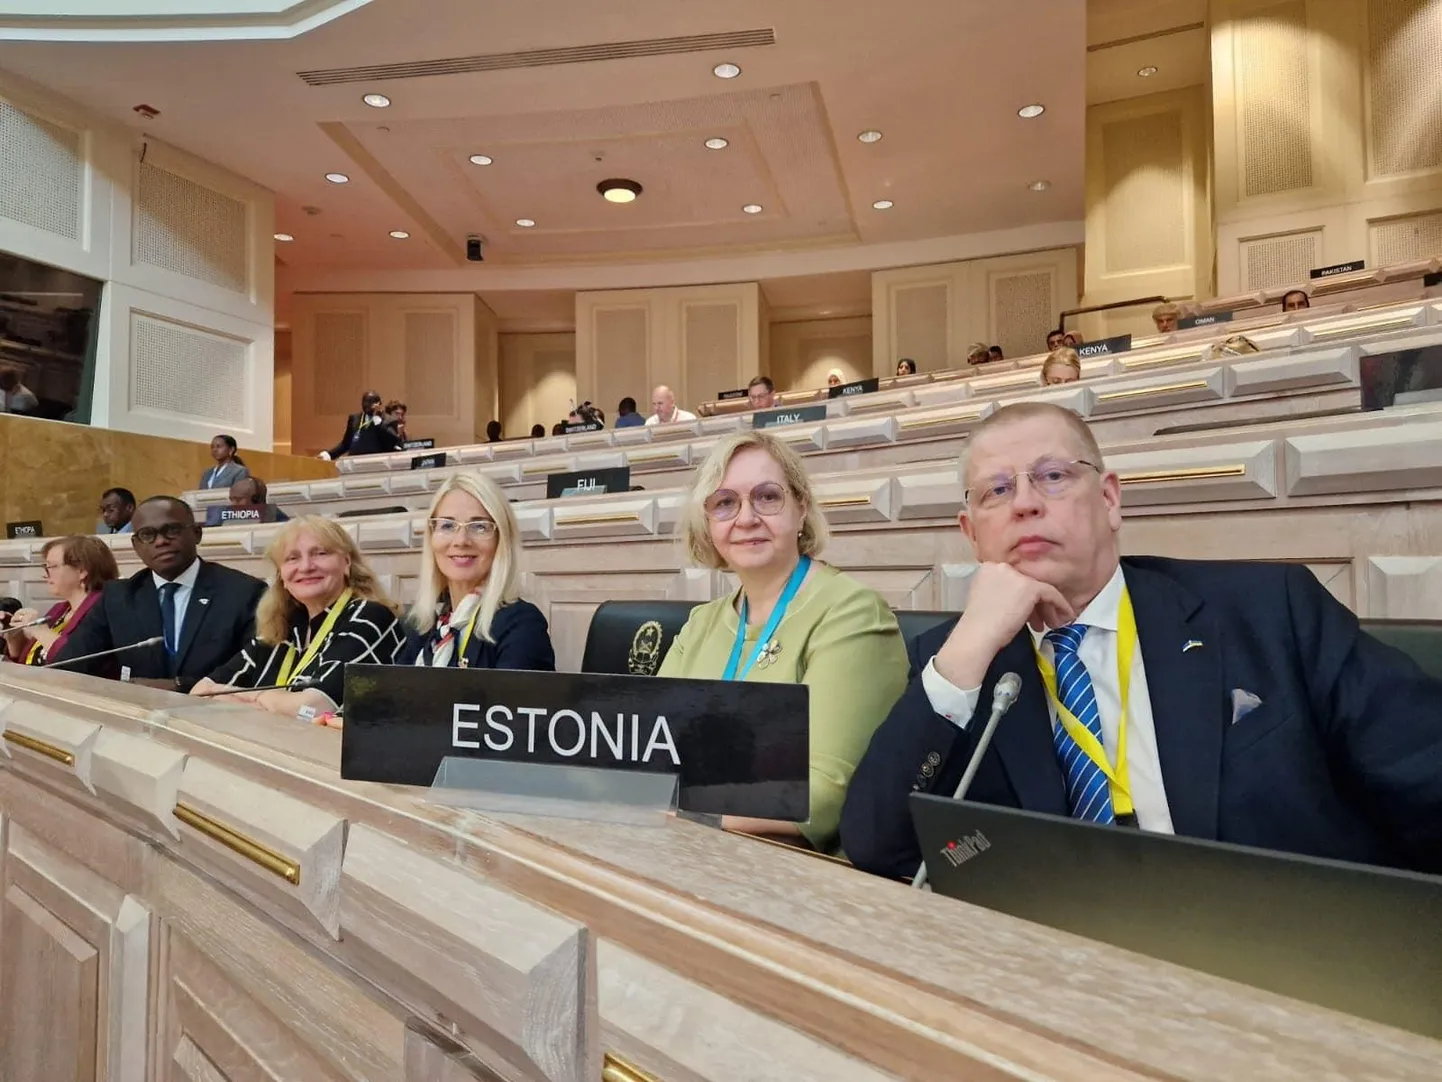 Eesti riigikogu delegatsioon osales Aafrika naftariigis Angolas parlamentidevahelise liidu 147. assambleel. Meie delegatsiooni koosseisu kuulusid Maris Lauri, Helmen Kütt, Helle-Monika Helme ja Peeter Tali.